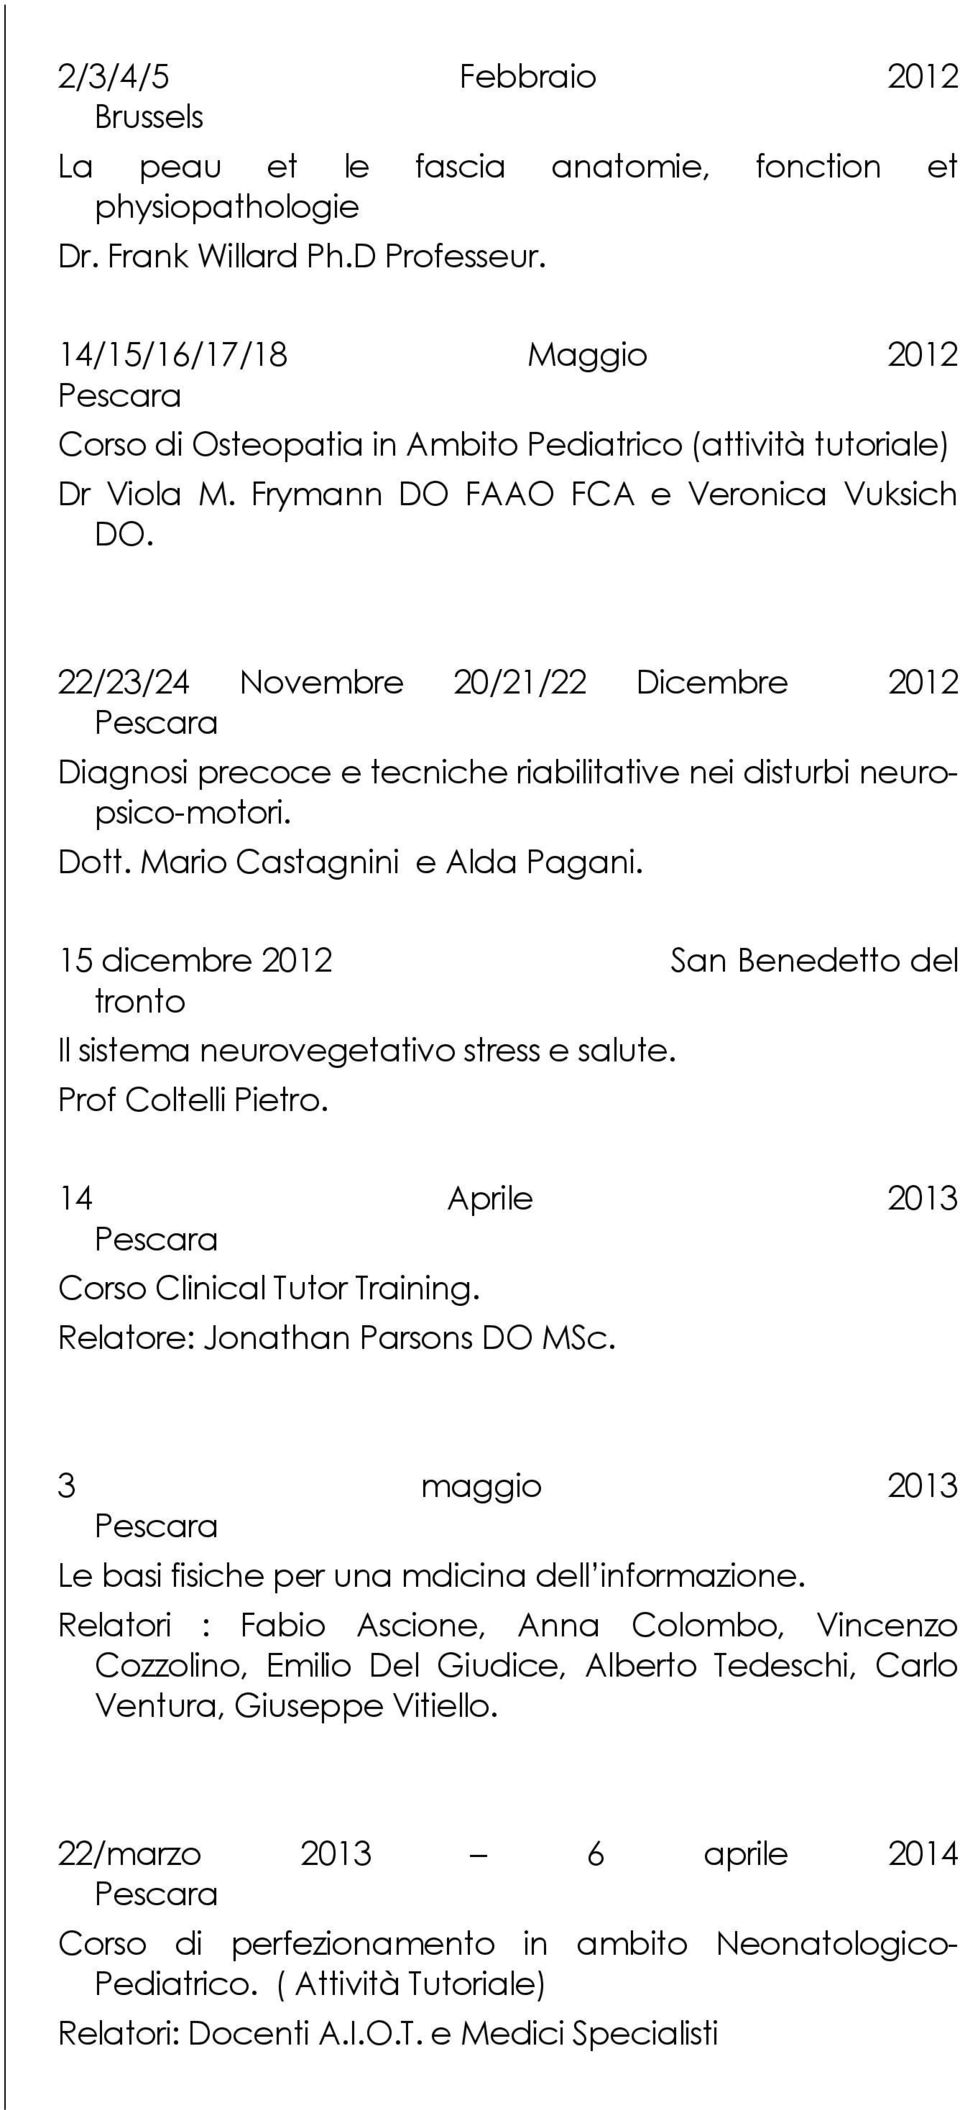 22/23/24 Novembre 20/21/22 Dicembre 2012 Diagnosi precoce e tecniche riabilitative nei disturbi neuropsico-motori. Dott. Mario Castagnini e Alda Pagani.